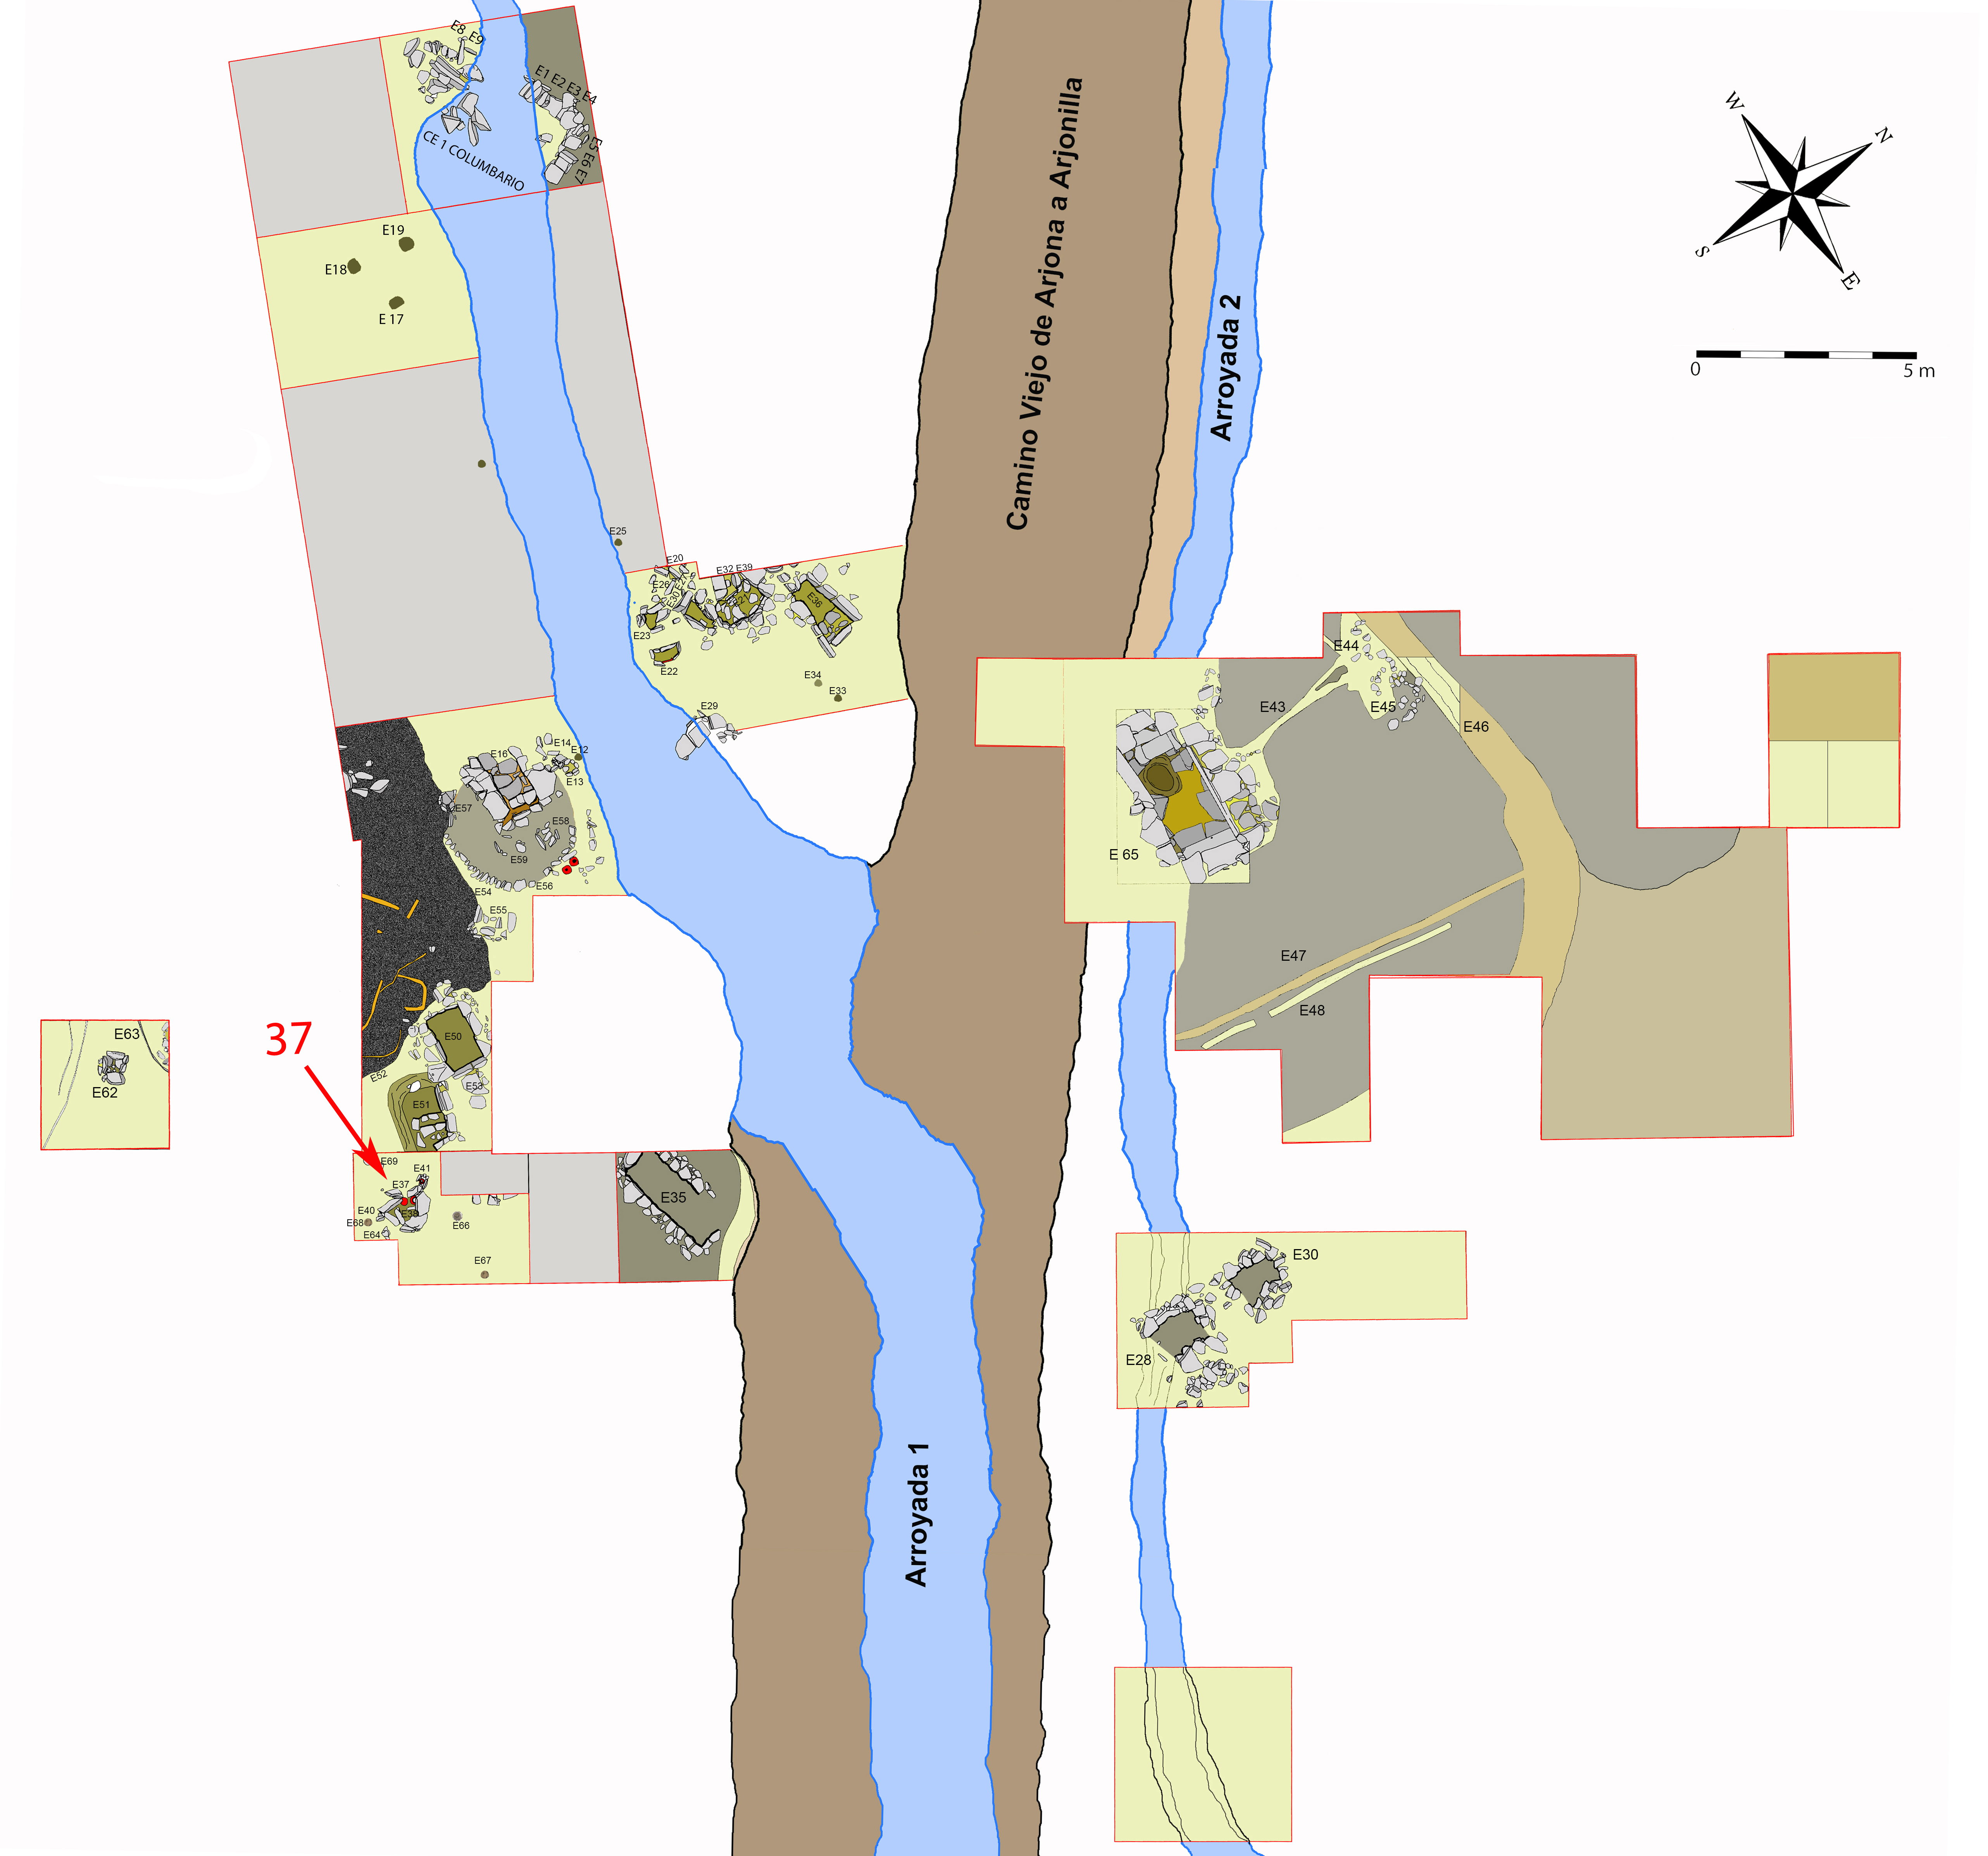 Plano general de la necrópolis de Piquía y localización de la tumba 37